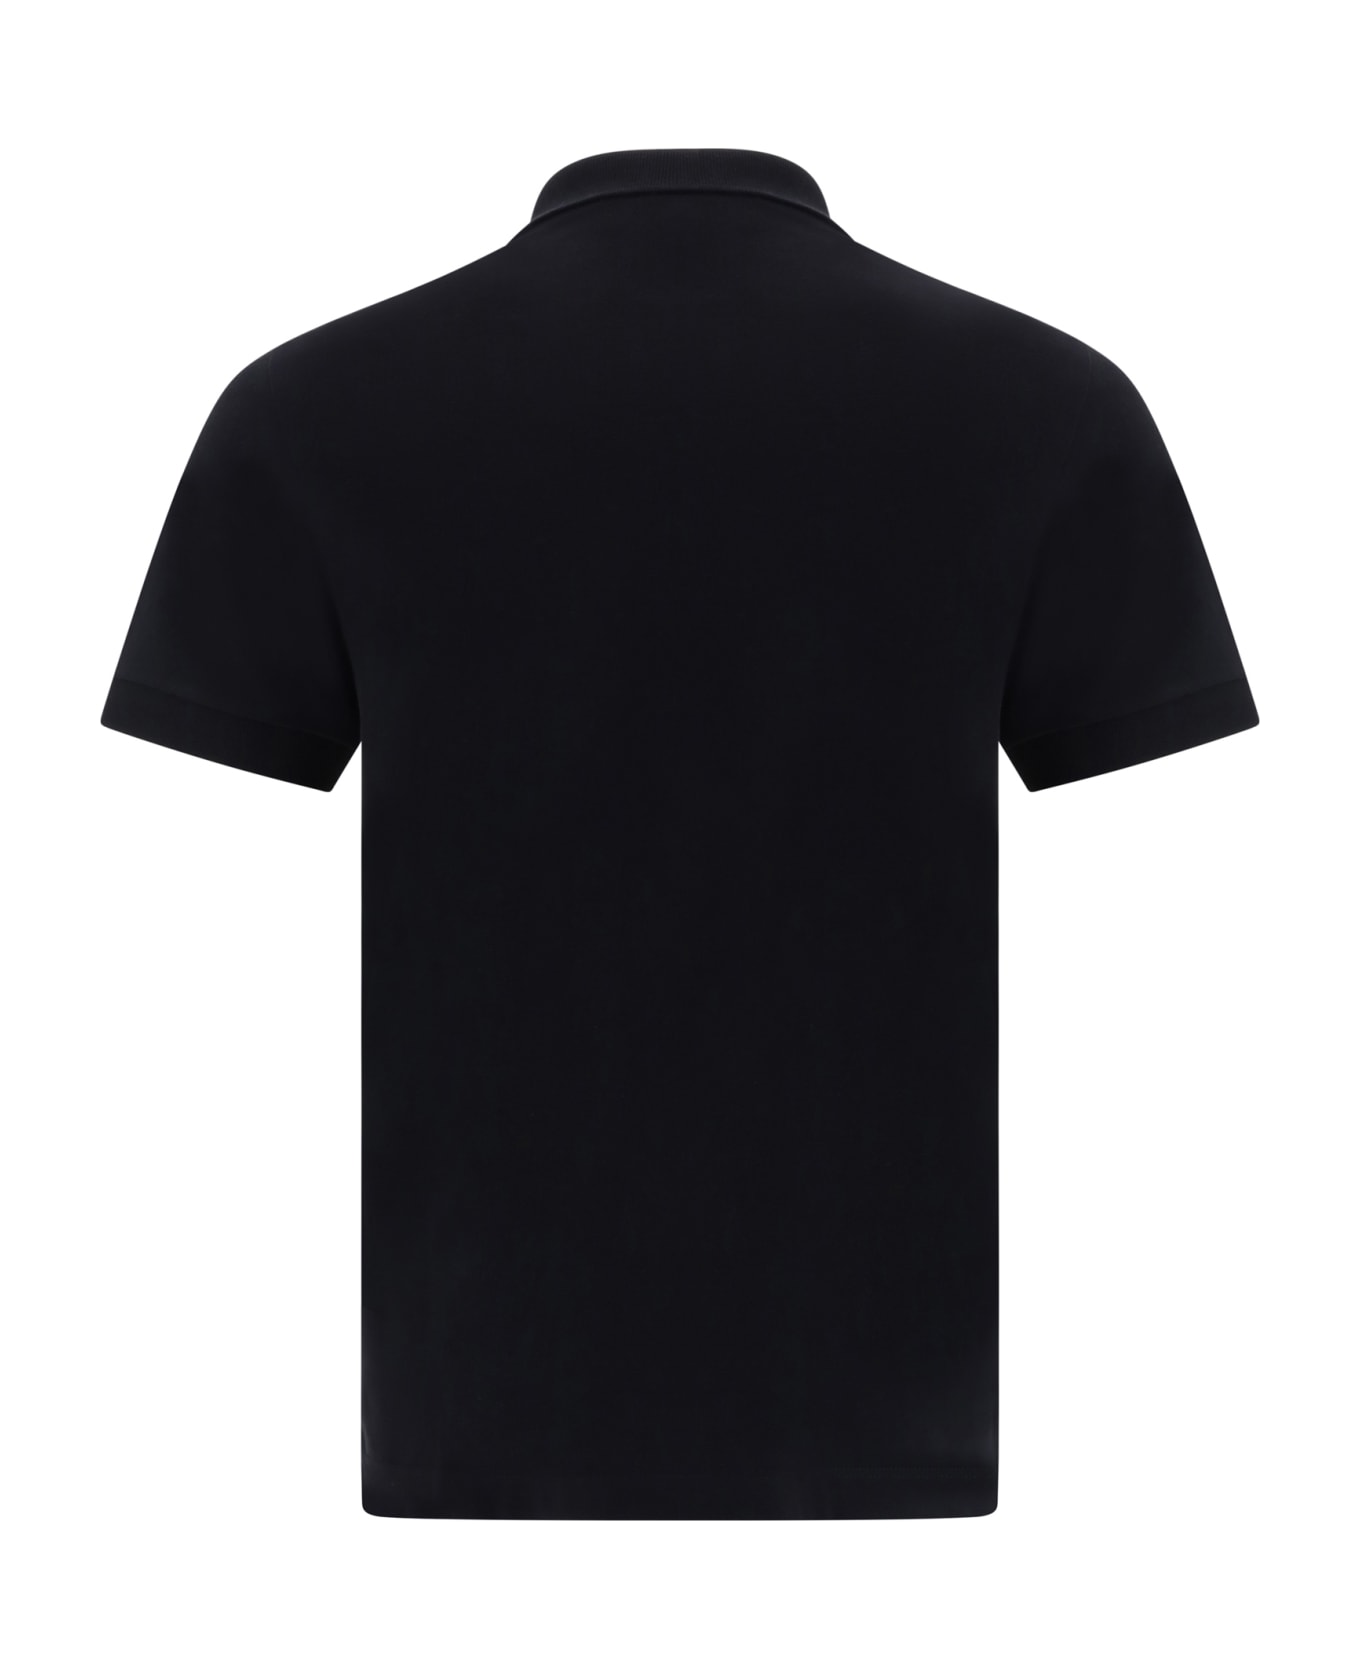 Stone Island Slim Fit Polo Polo Shirt - Black ポロシャツ